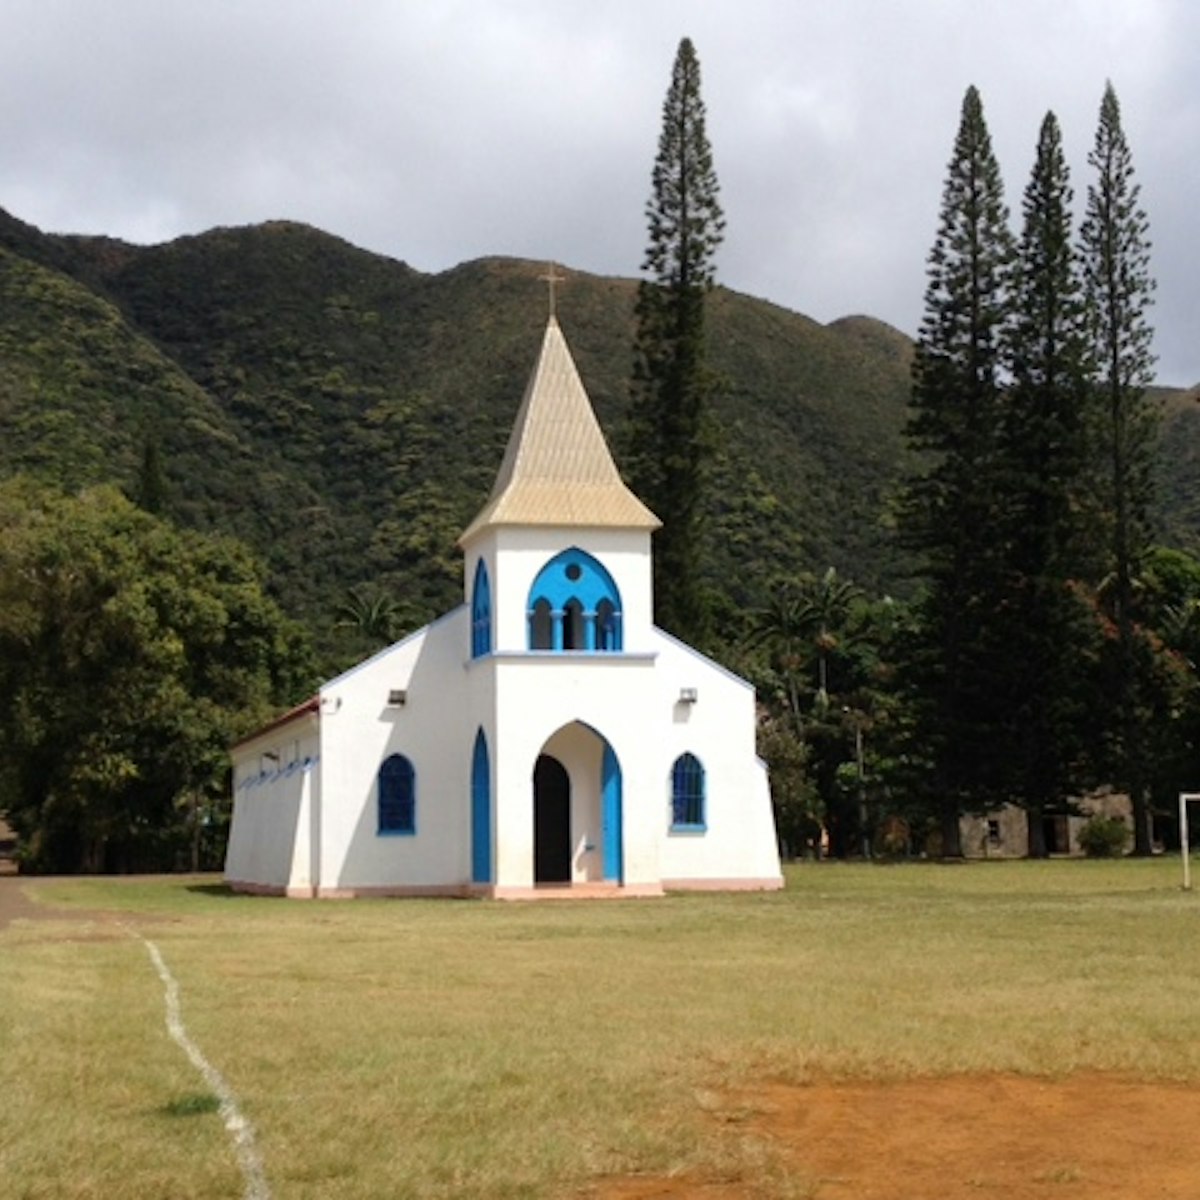 Touaourou Church